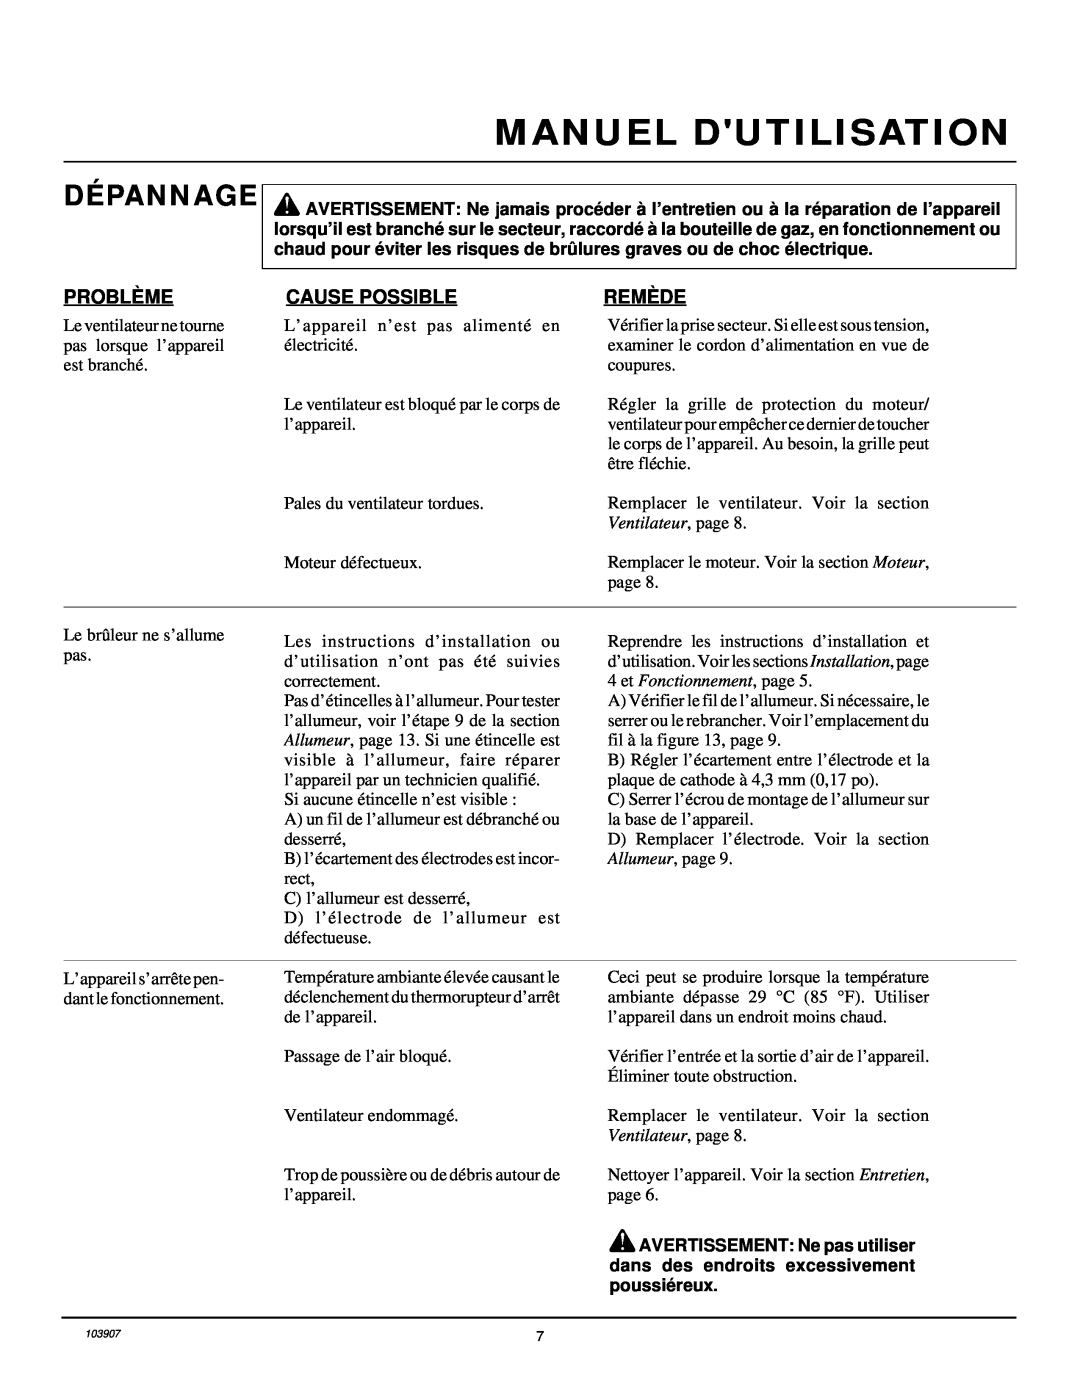 Desa RCLP35B owner manual Dépannage, Manuel Dutilisation, Problè Me, Cause Possible, Remè De, Ventilateur, page 